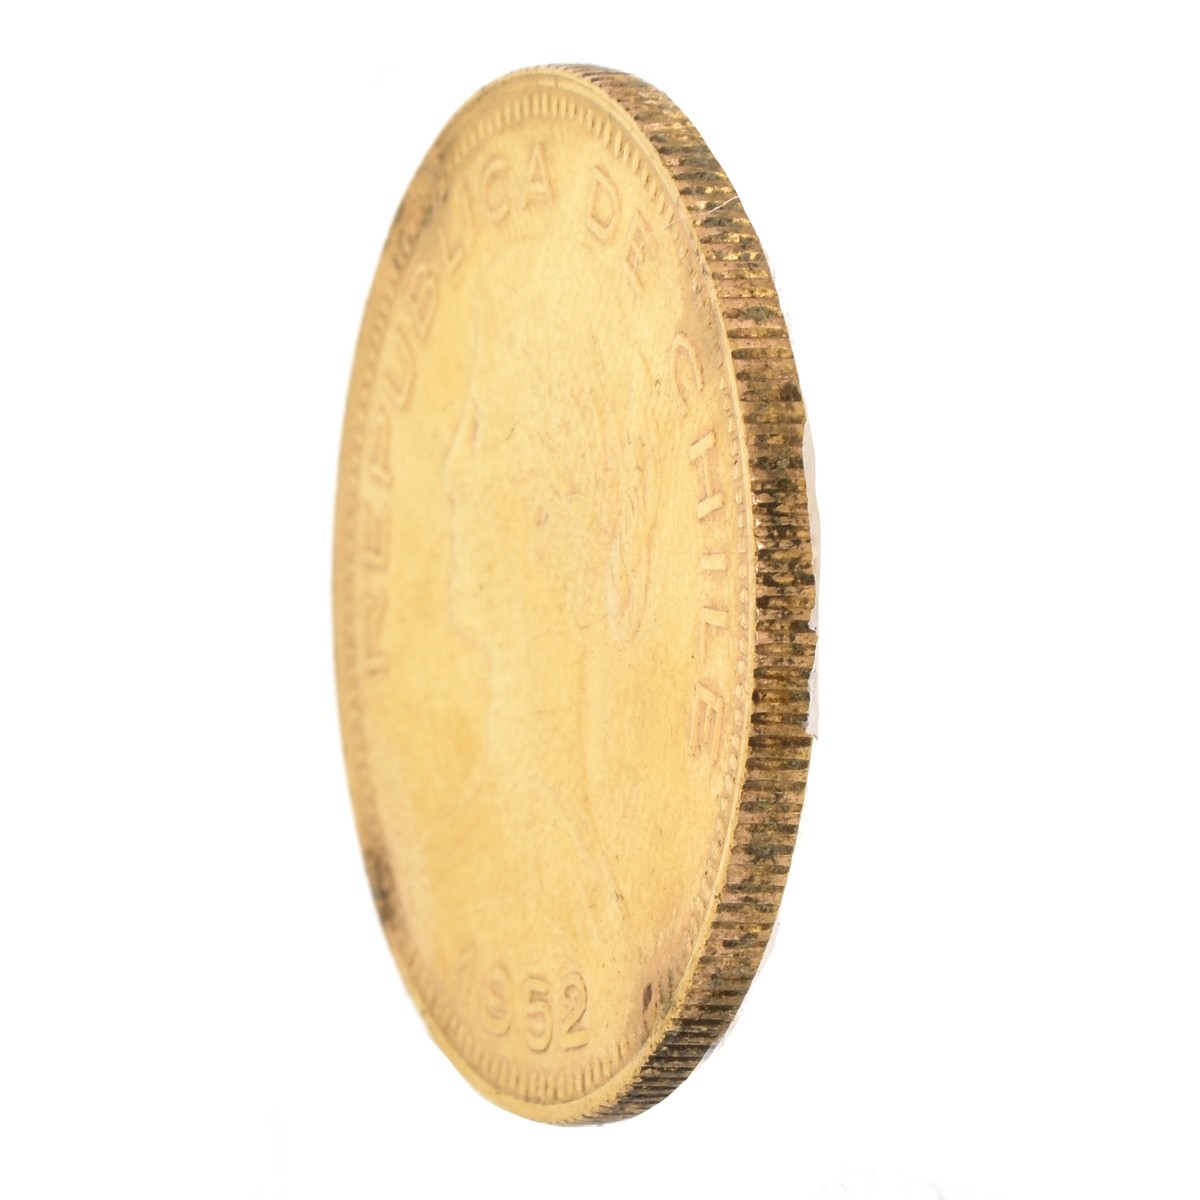 Chilean 50 Pesos Gold Coin